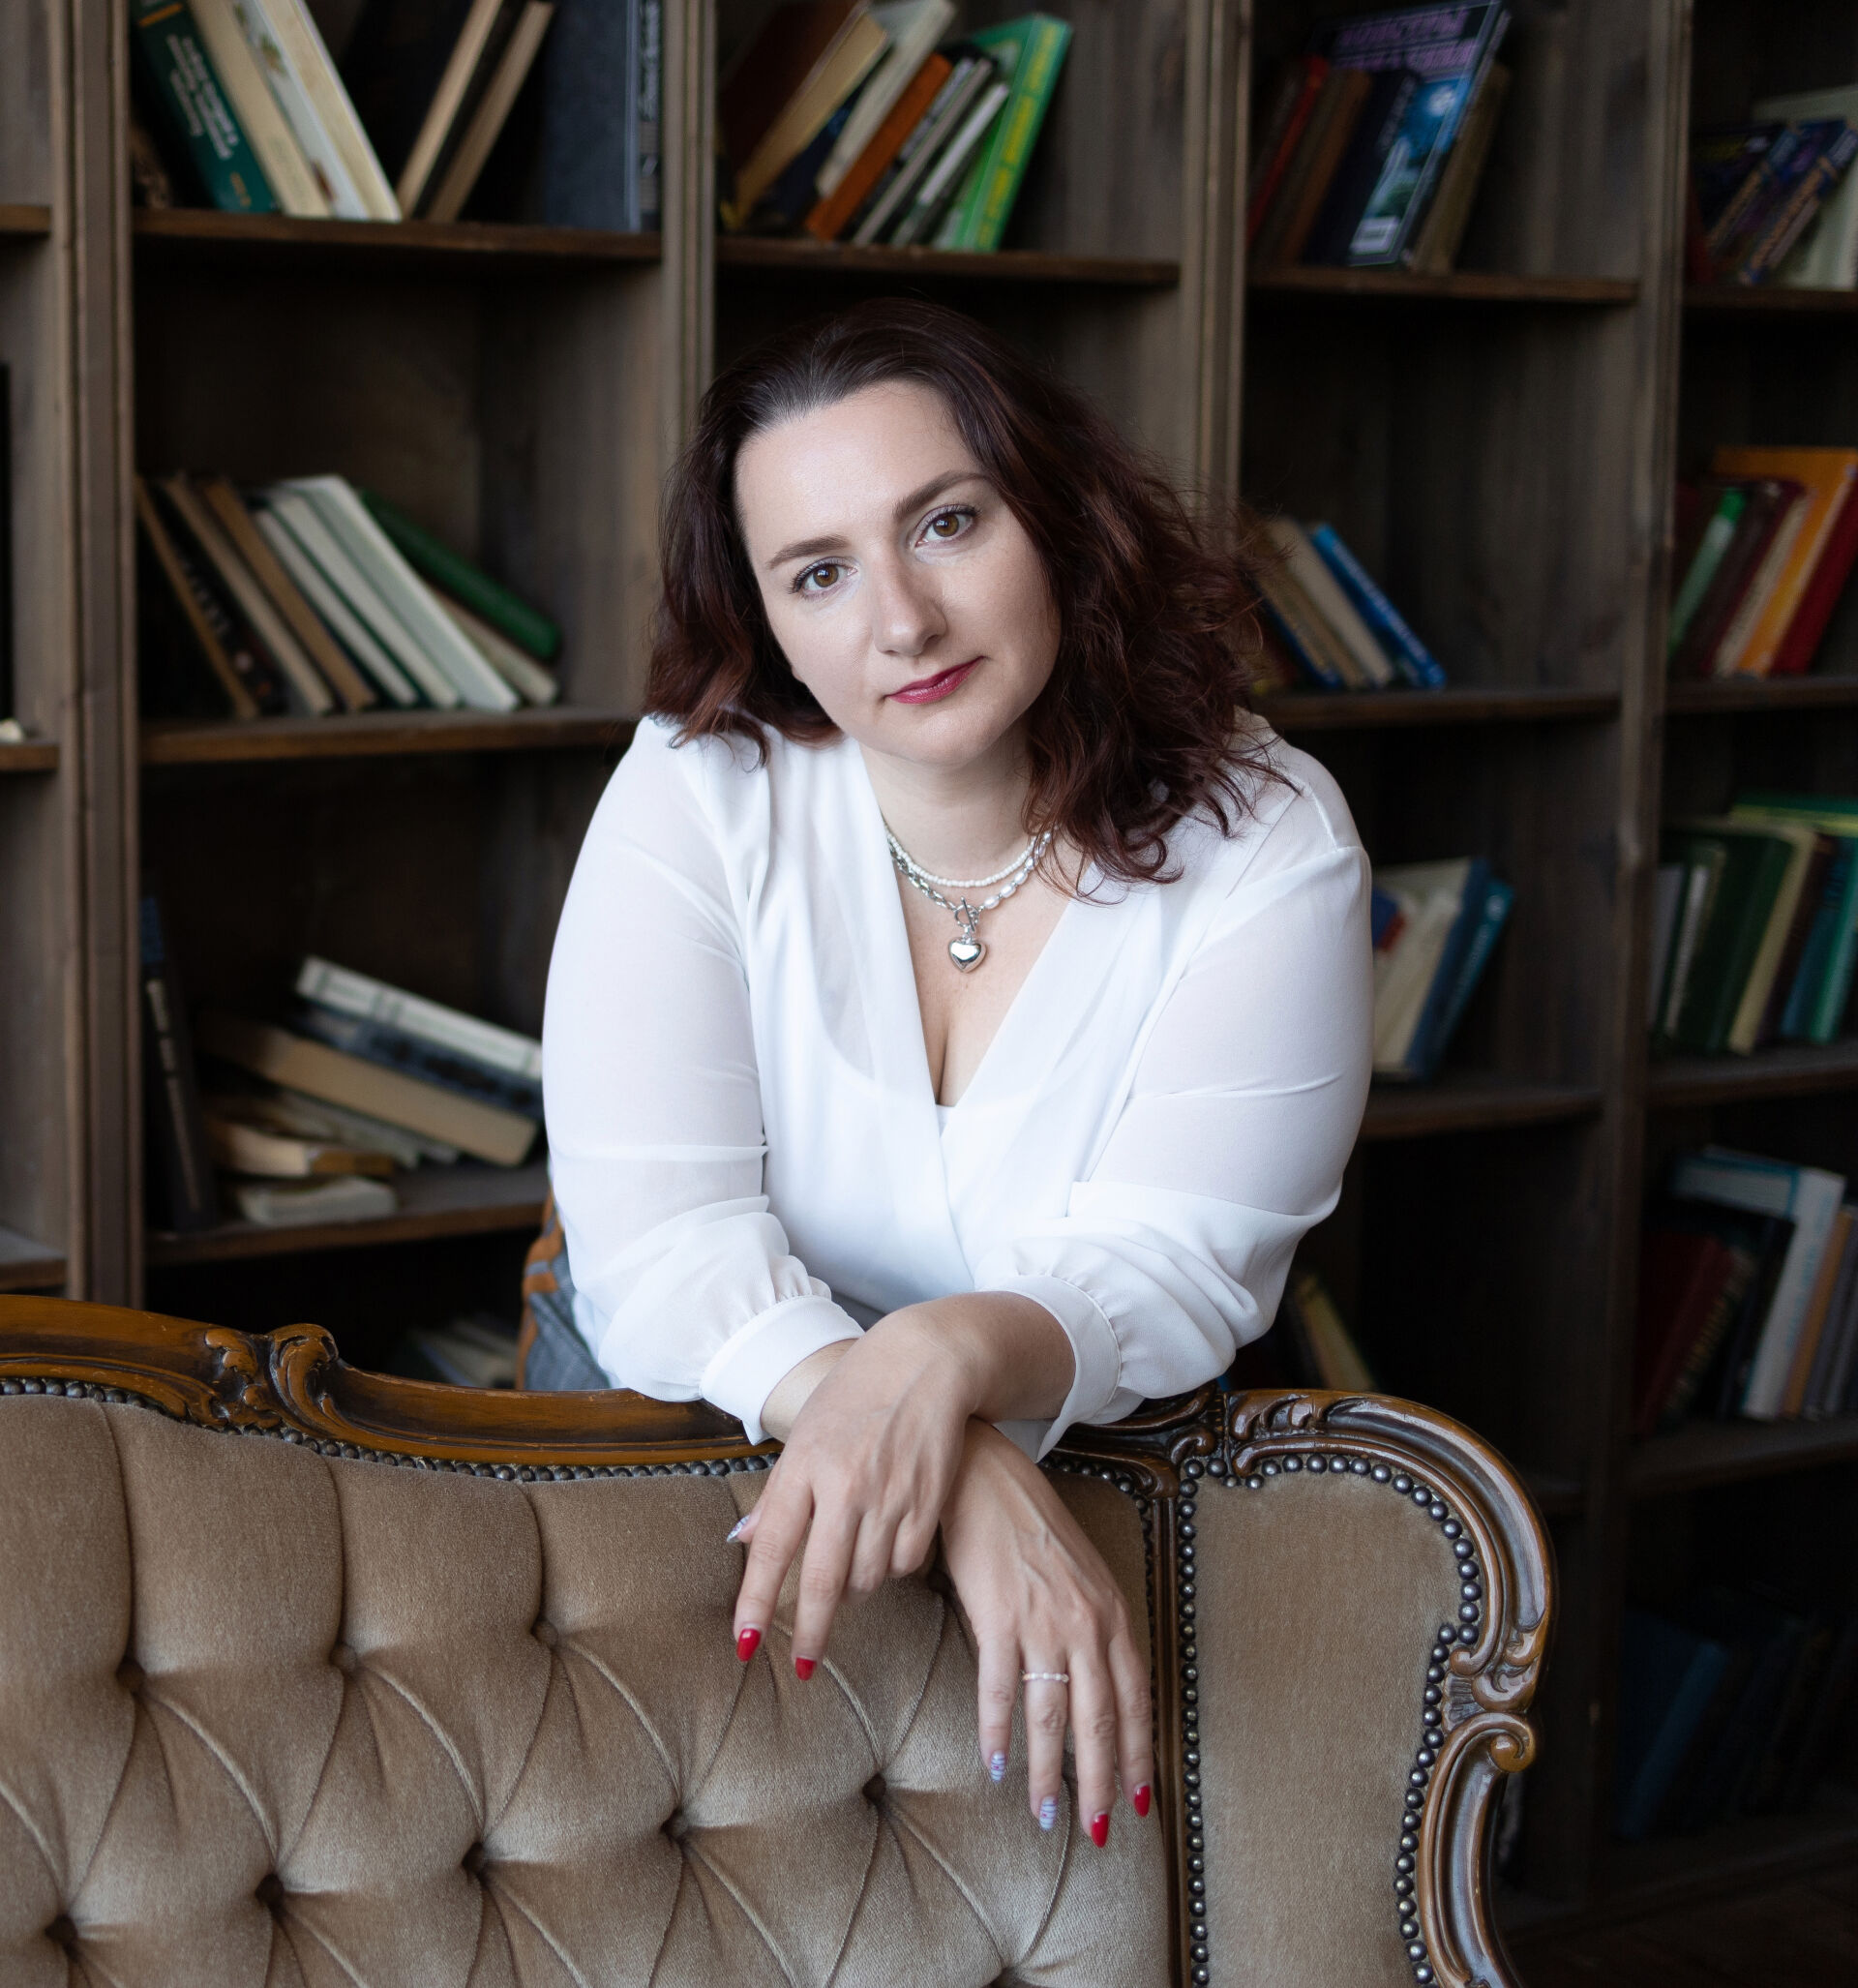 Ирина Биктимерова: «Бизнес – это подстраивать рабочий график под свою жизнь»